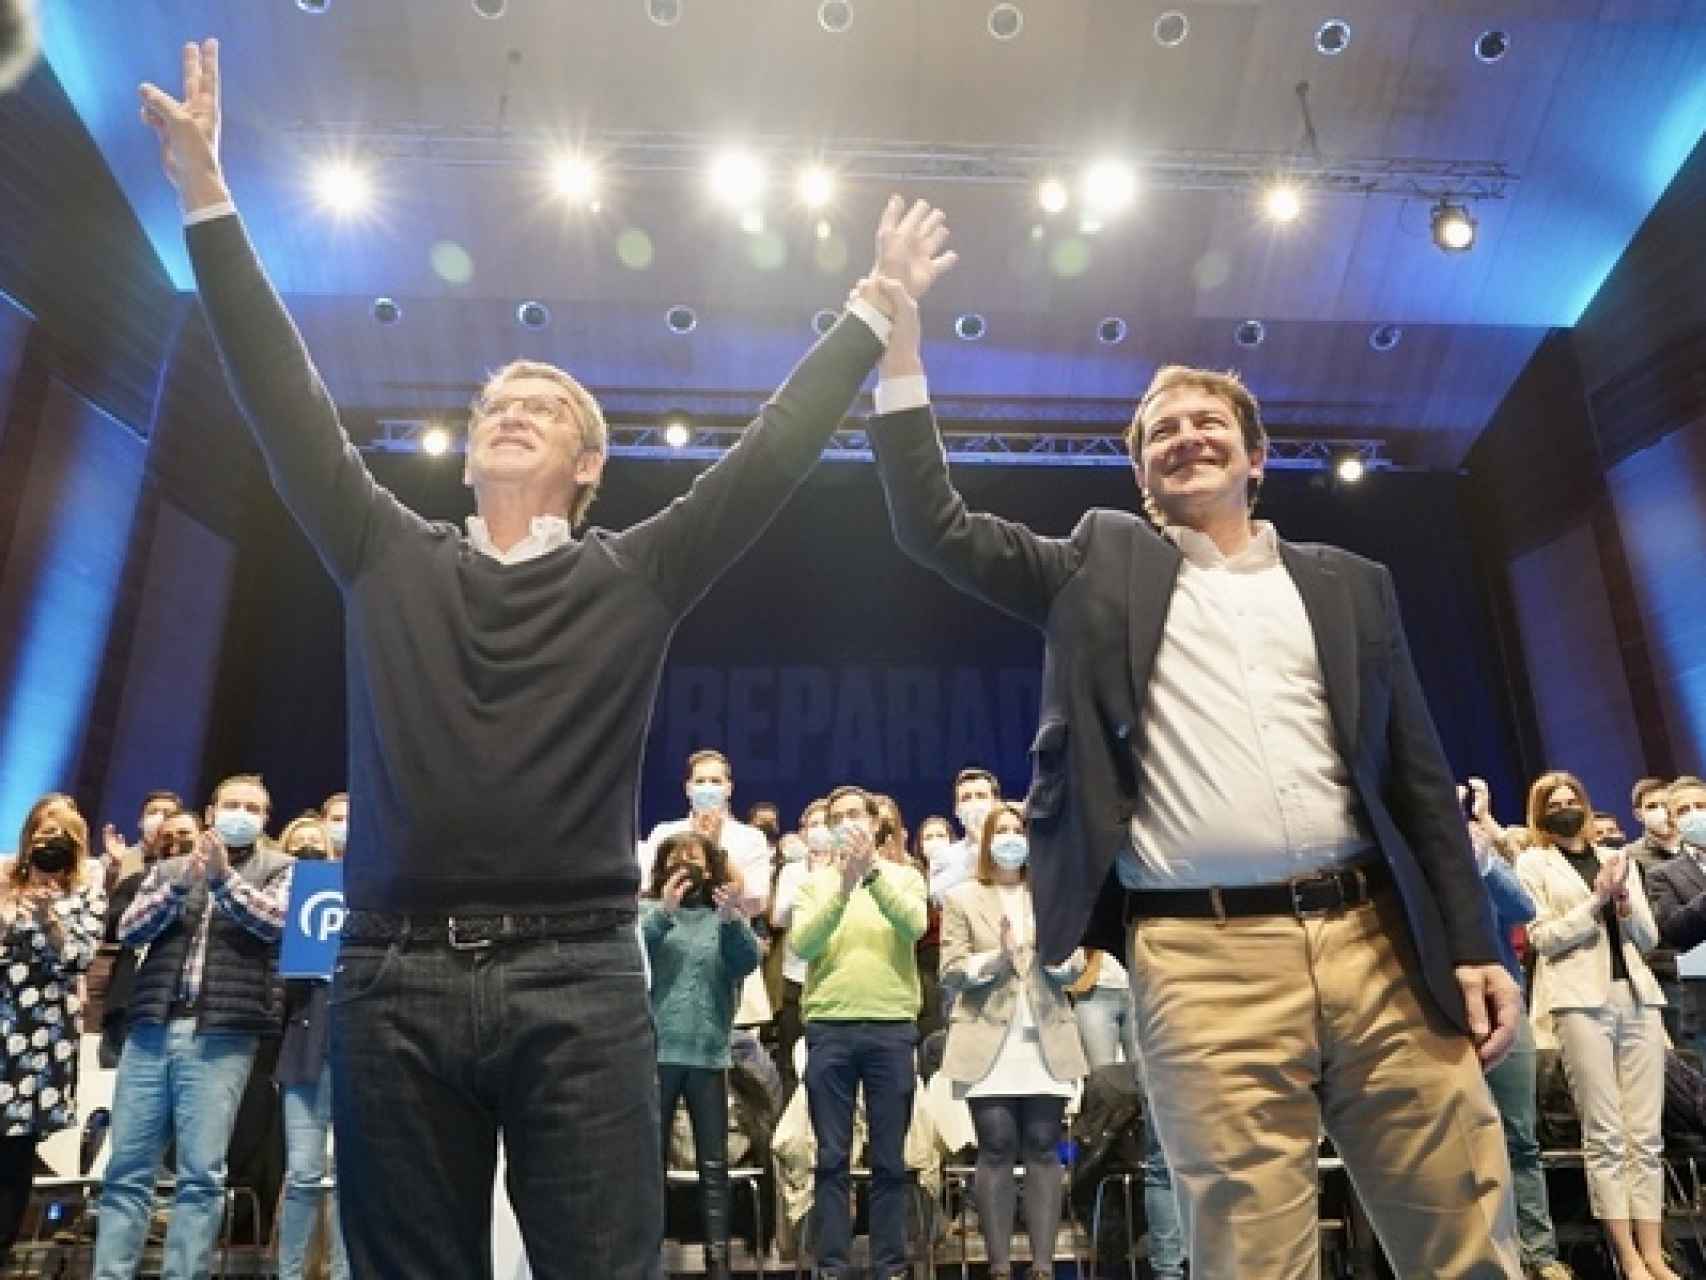 El presidente de la Junta, Alfonso Fernández Mañueco, y el líder del PP, Alberto Núñez Feijóo, en una imagen de archivo.